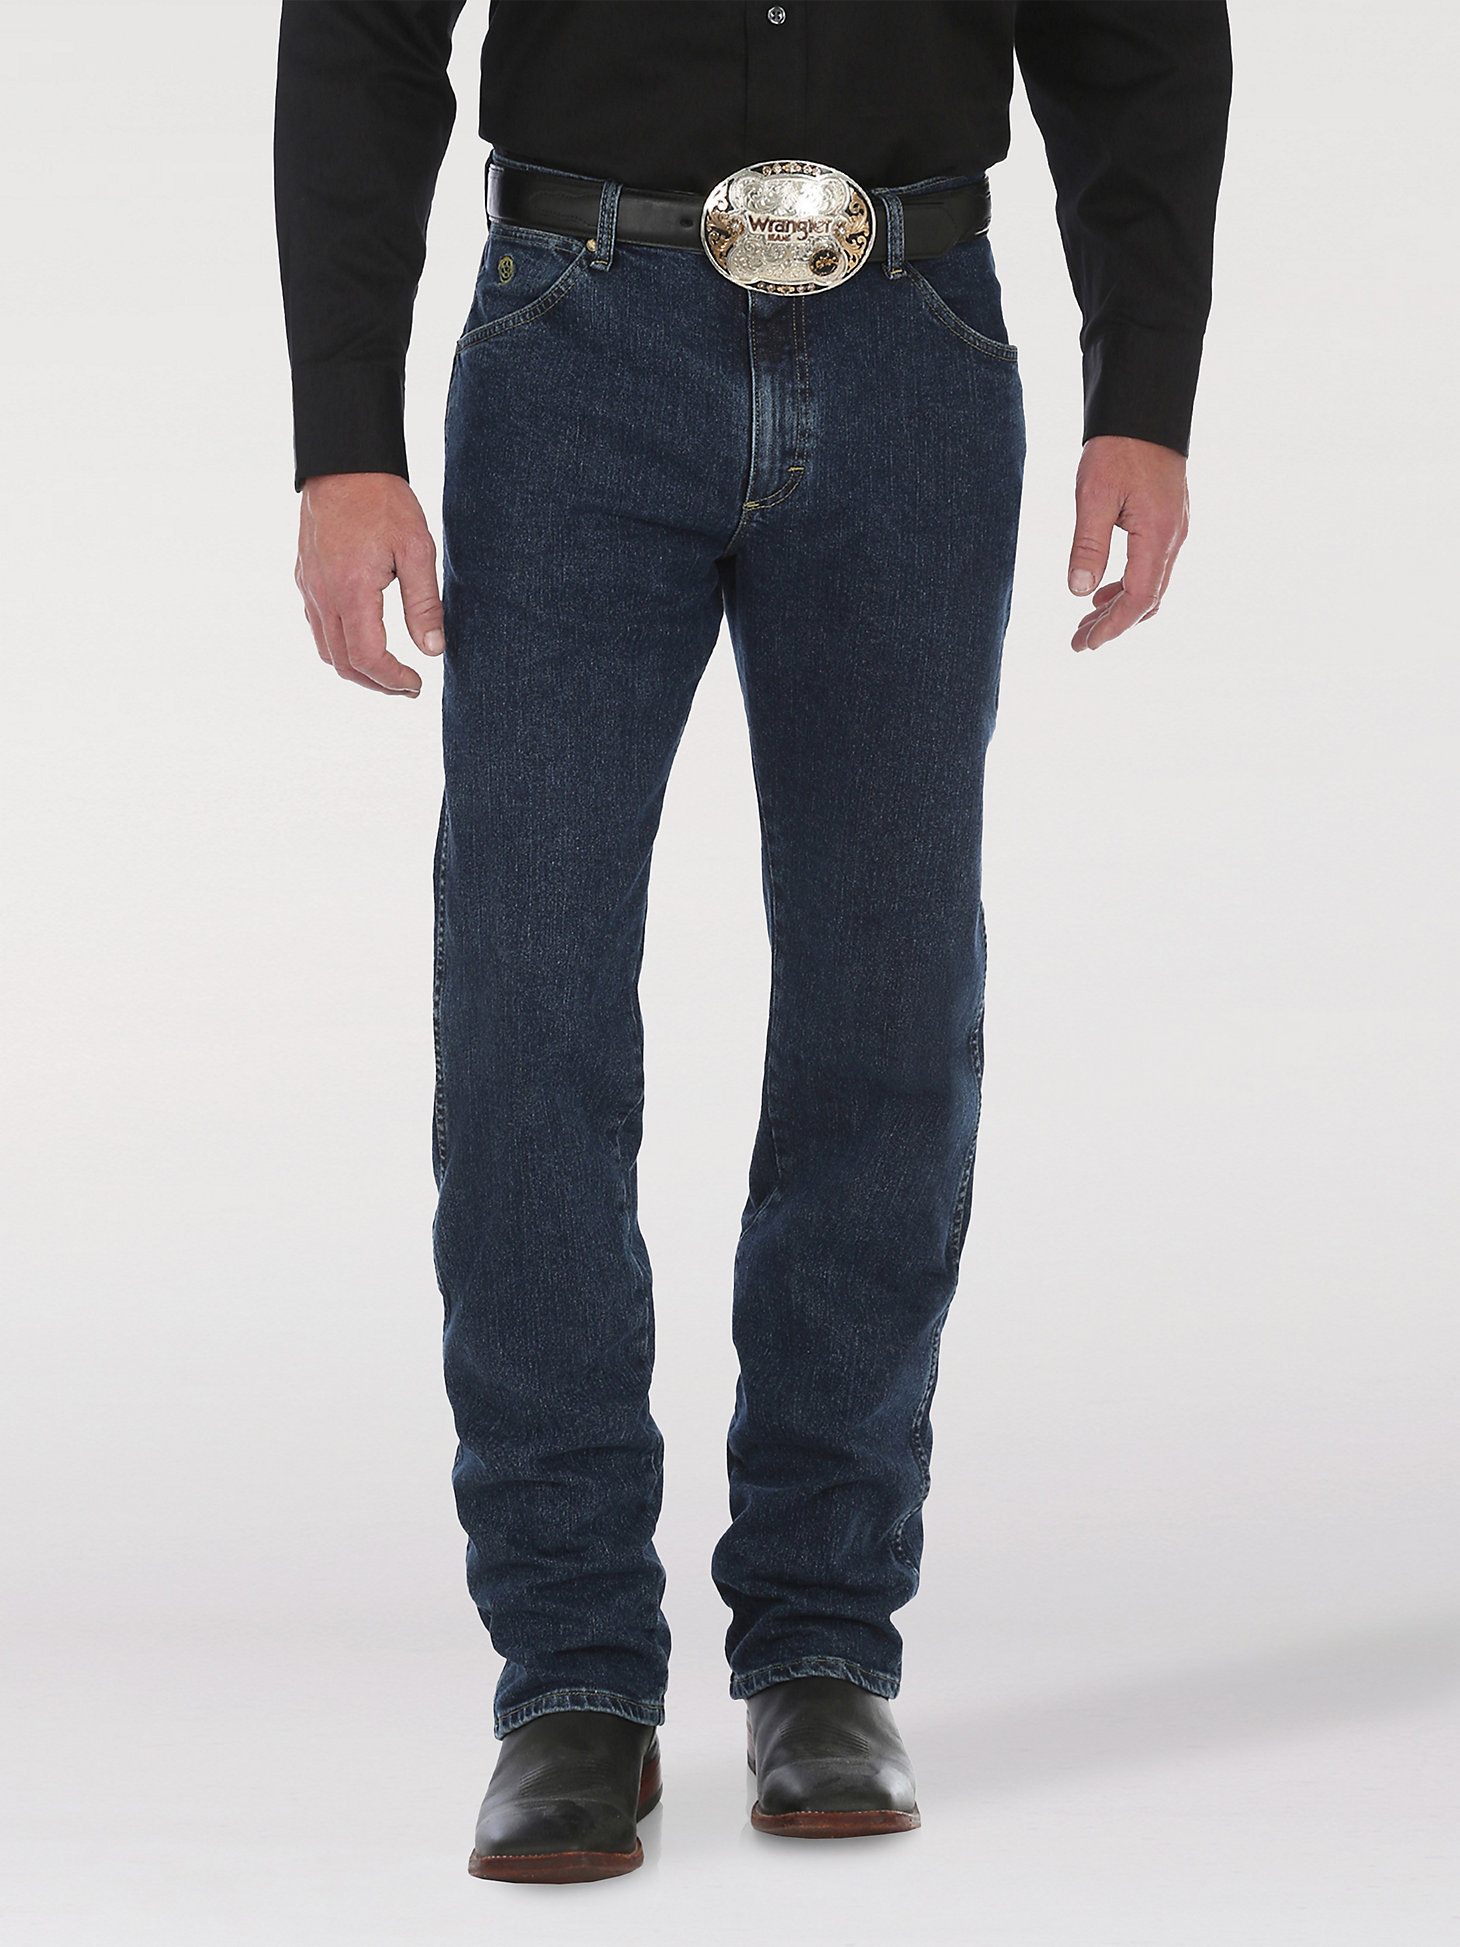 George Strait Cowboy Cut® Regular Fit Jean in Dark Amarillo main view